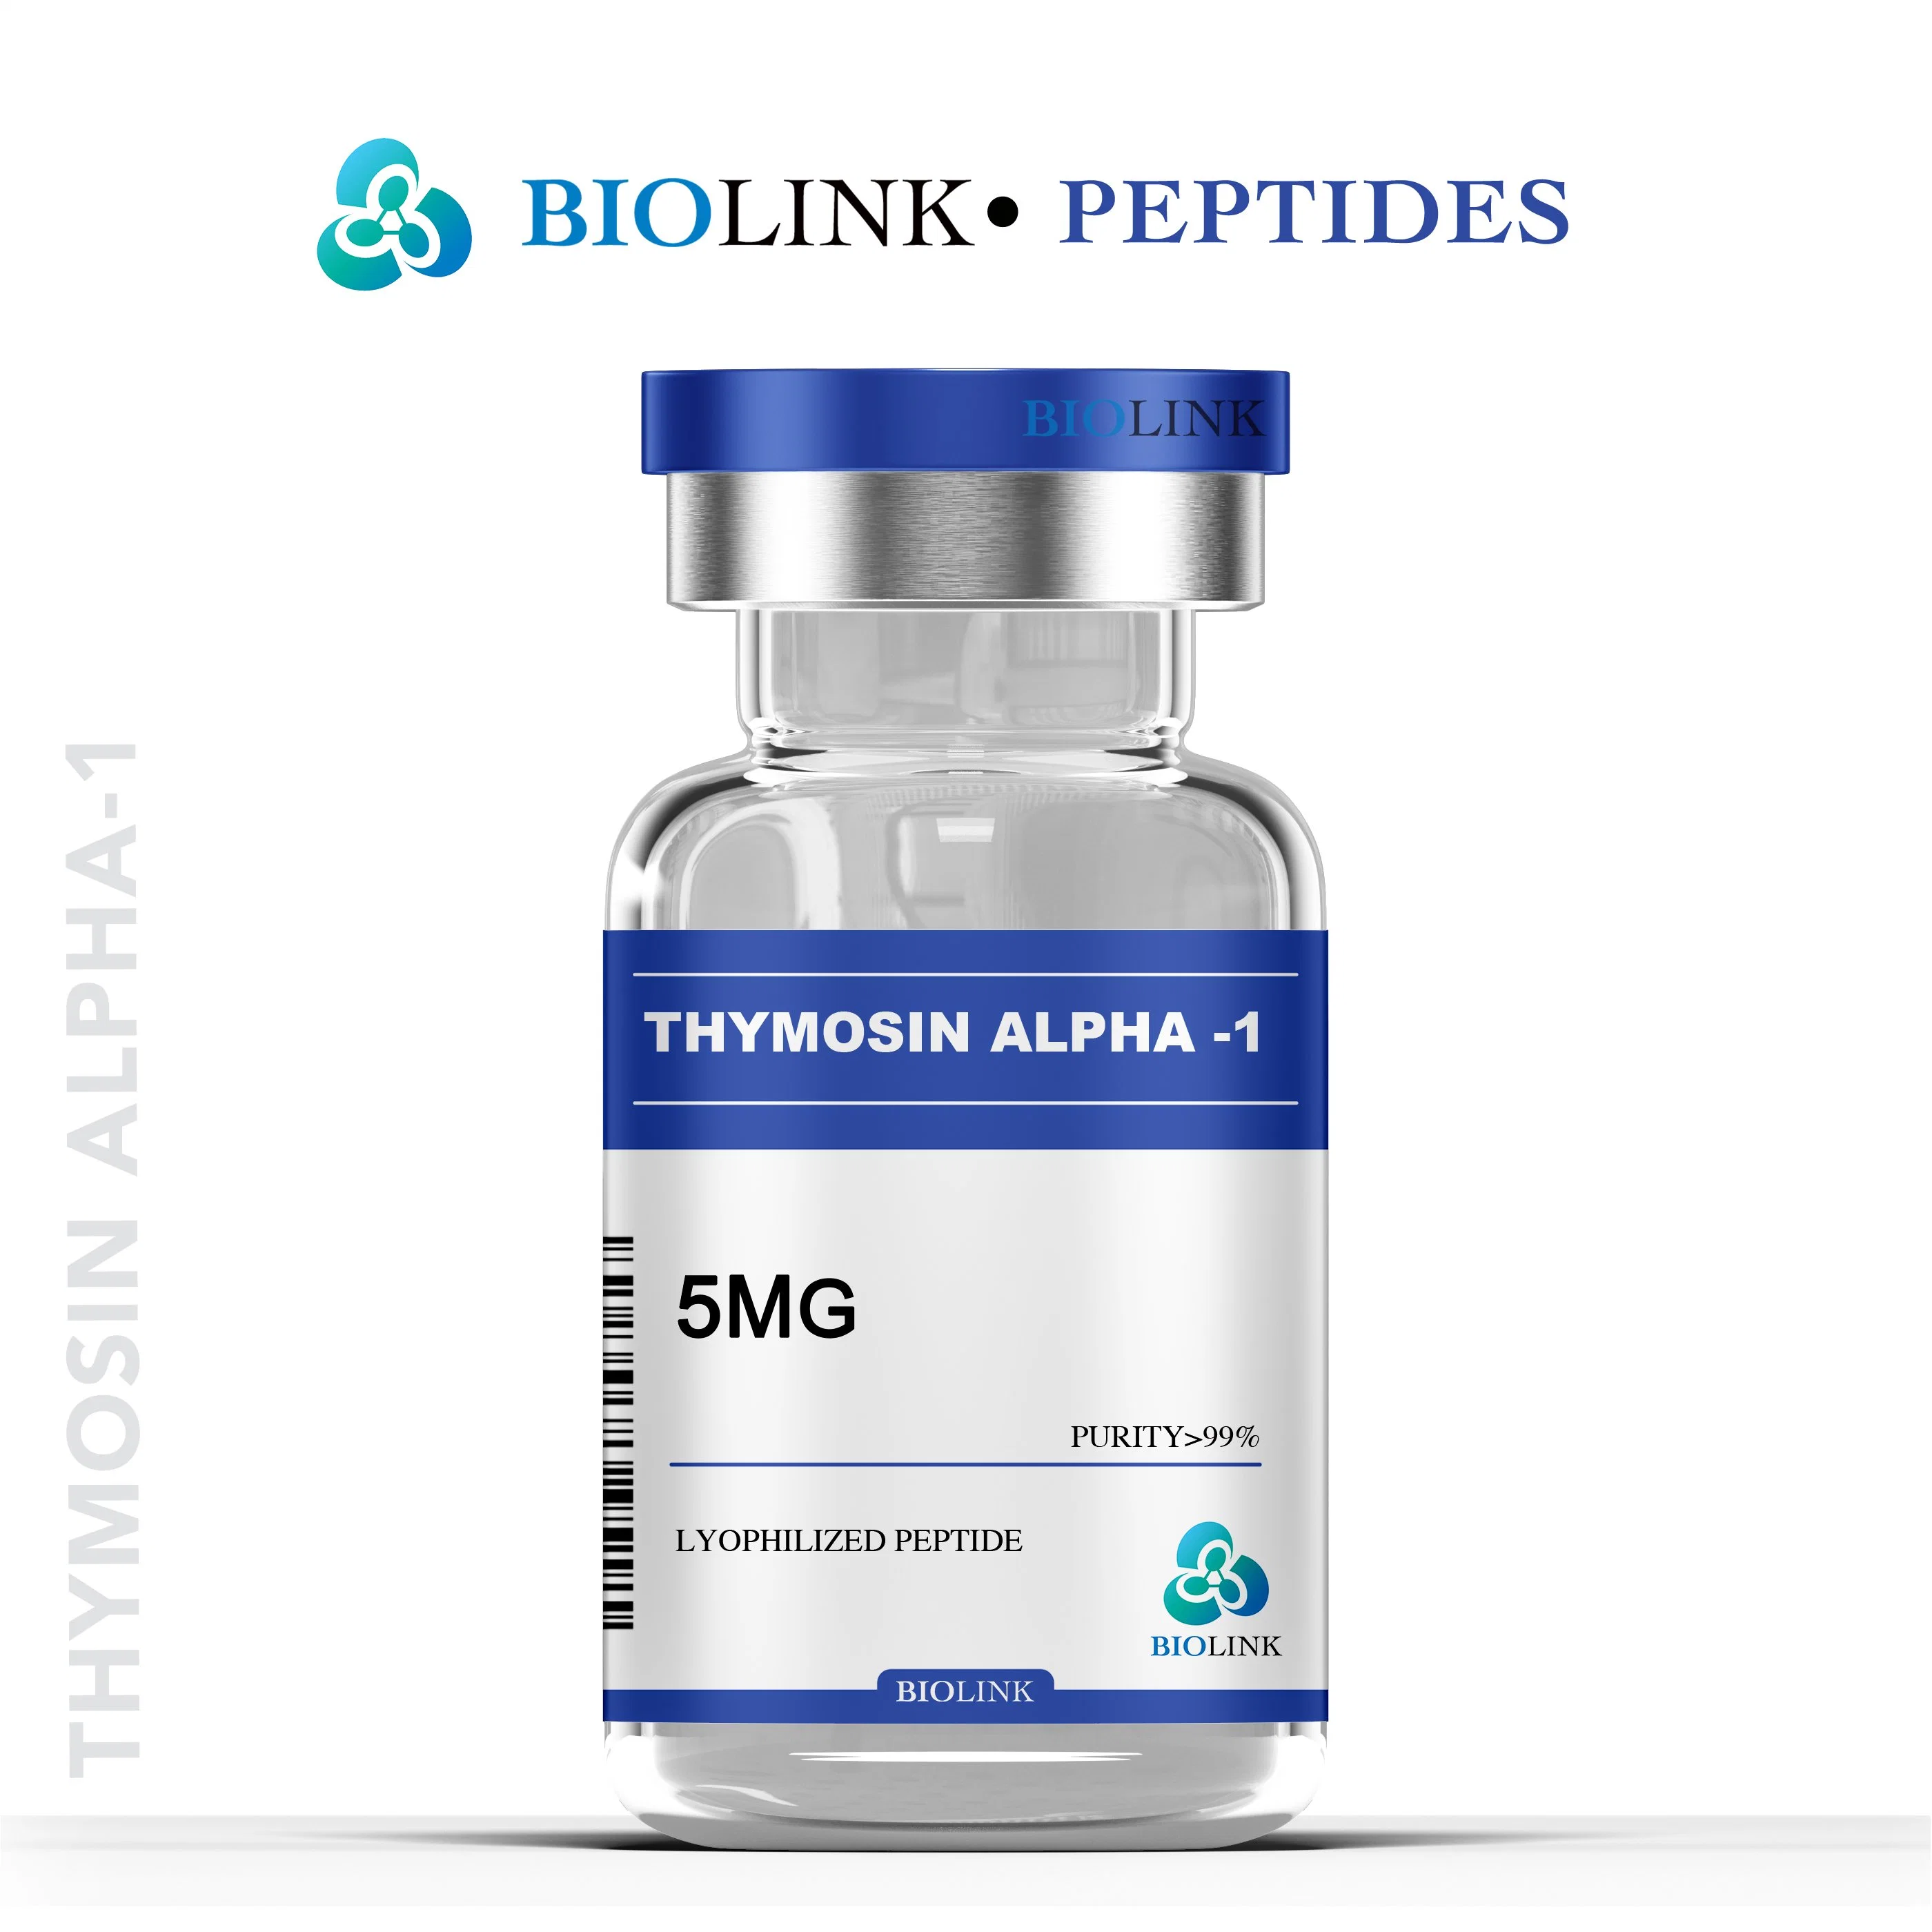 Potencie su sistema inmunológico con Timosin Alpha-1 1mg 2mg 5mg péptidos biolink liofilizados personalizados CAS: 62304-98-7